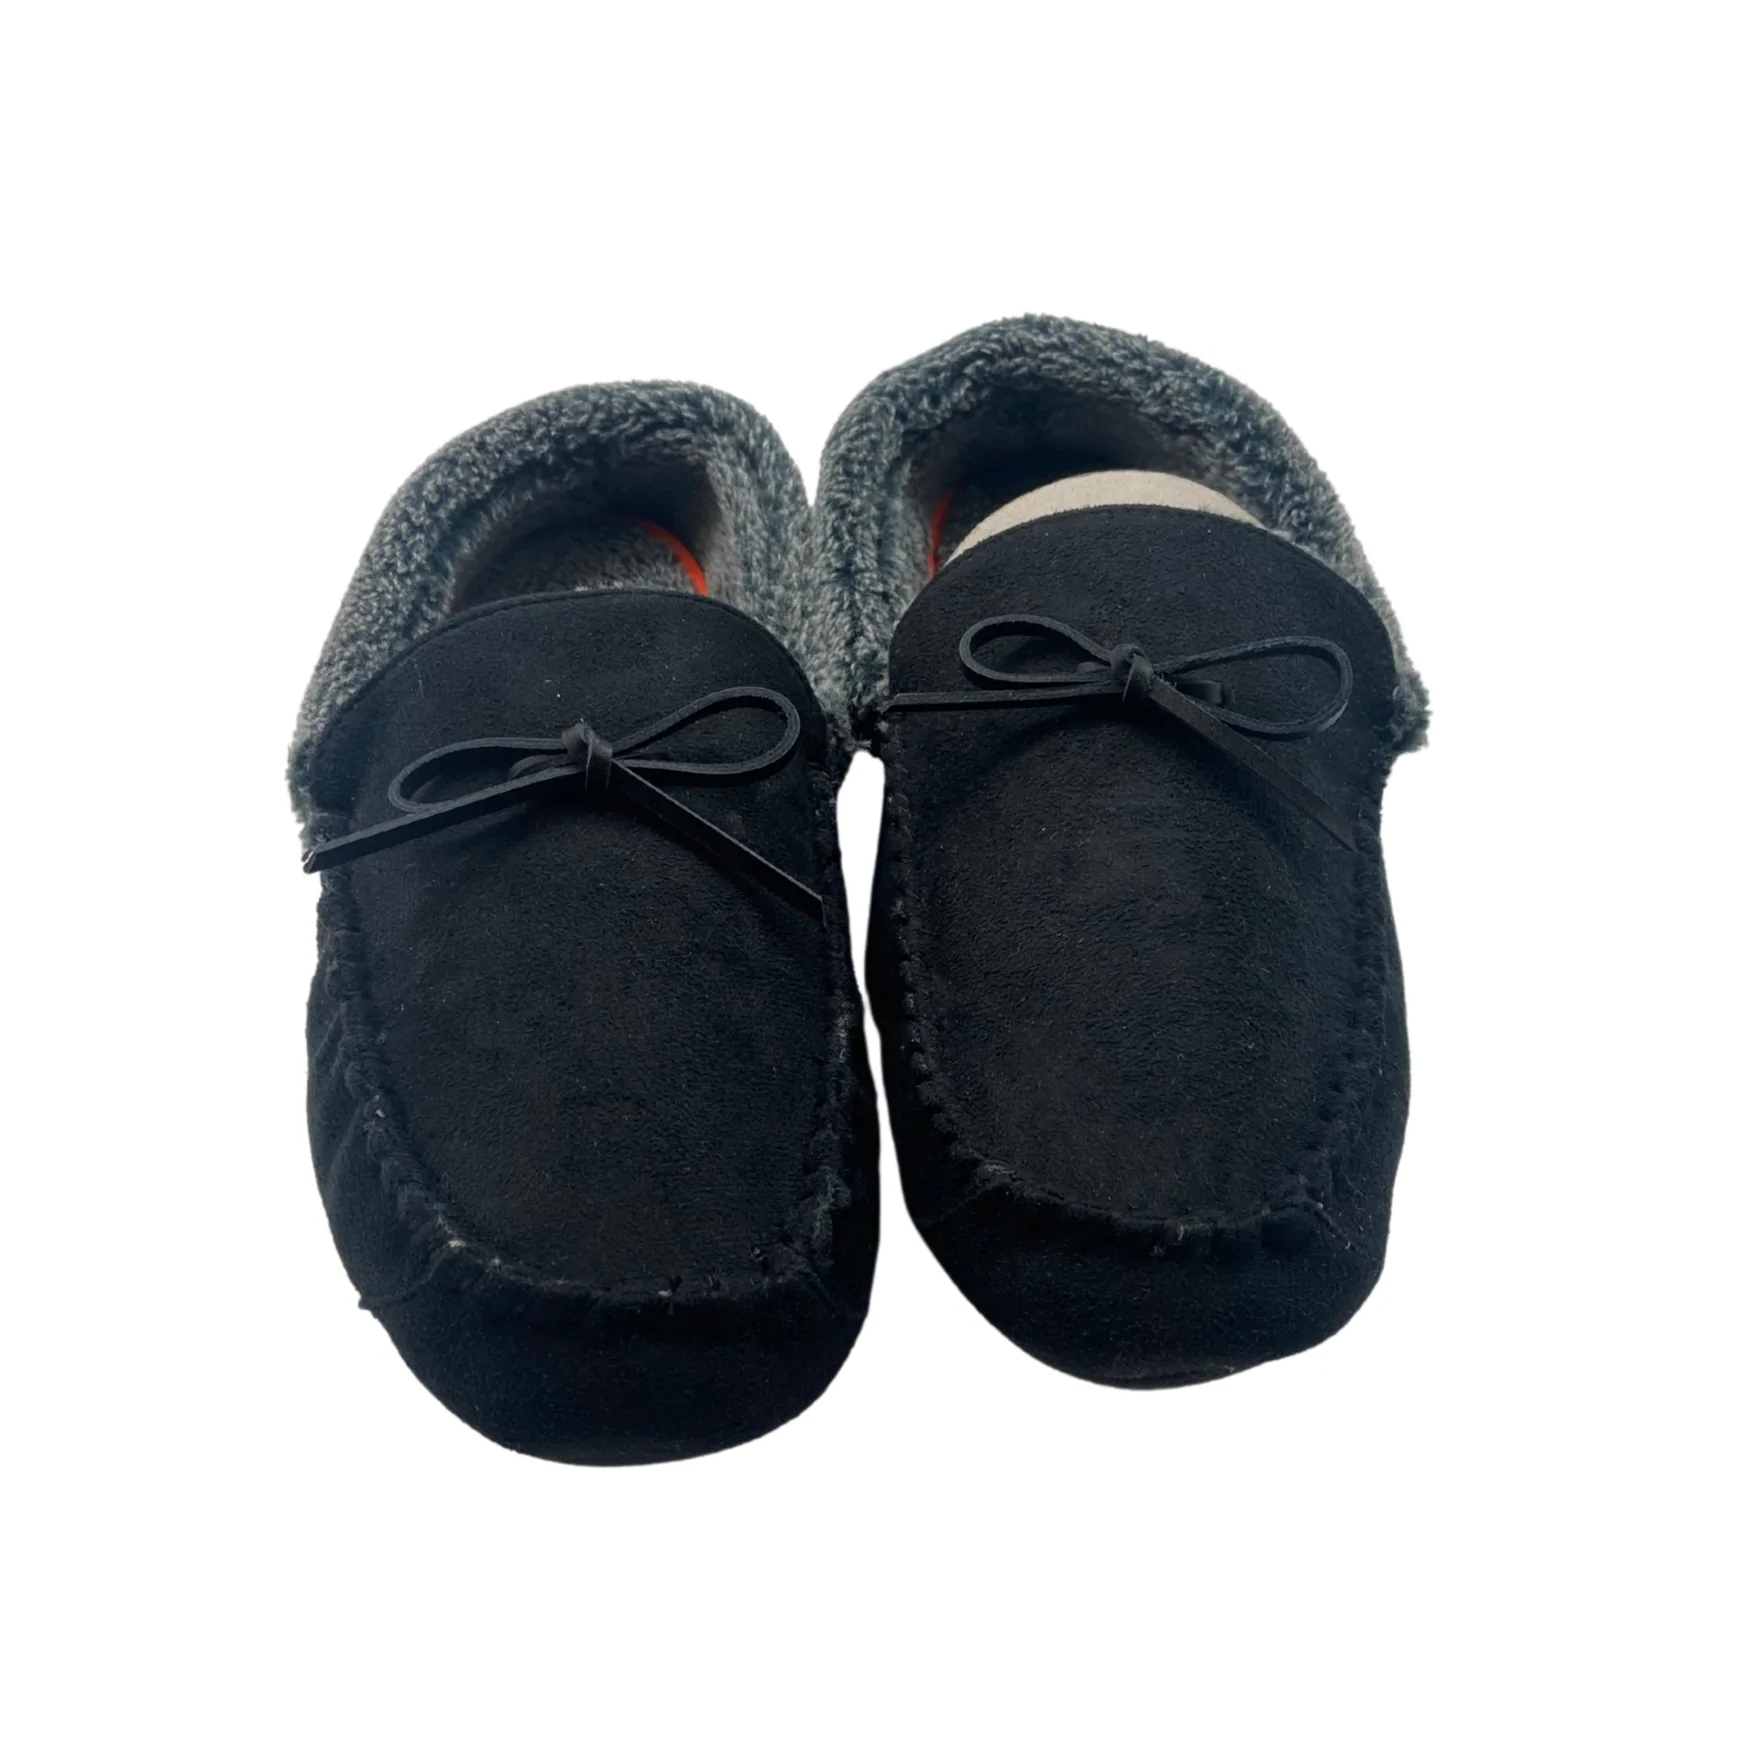 Dockers: Men's Slippers / Memory Foam / XXL / Grey / Black / Fuzzy